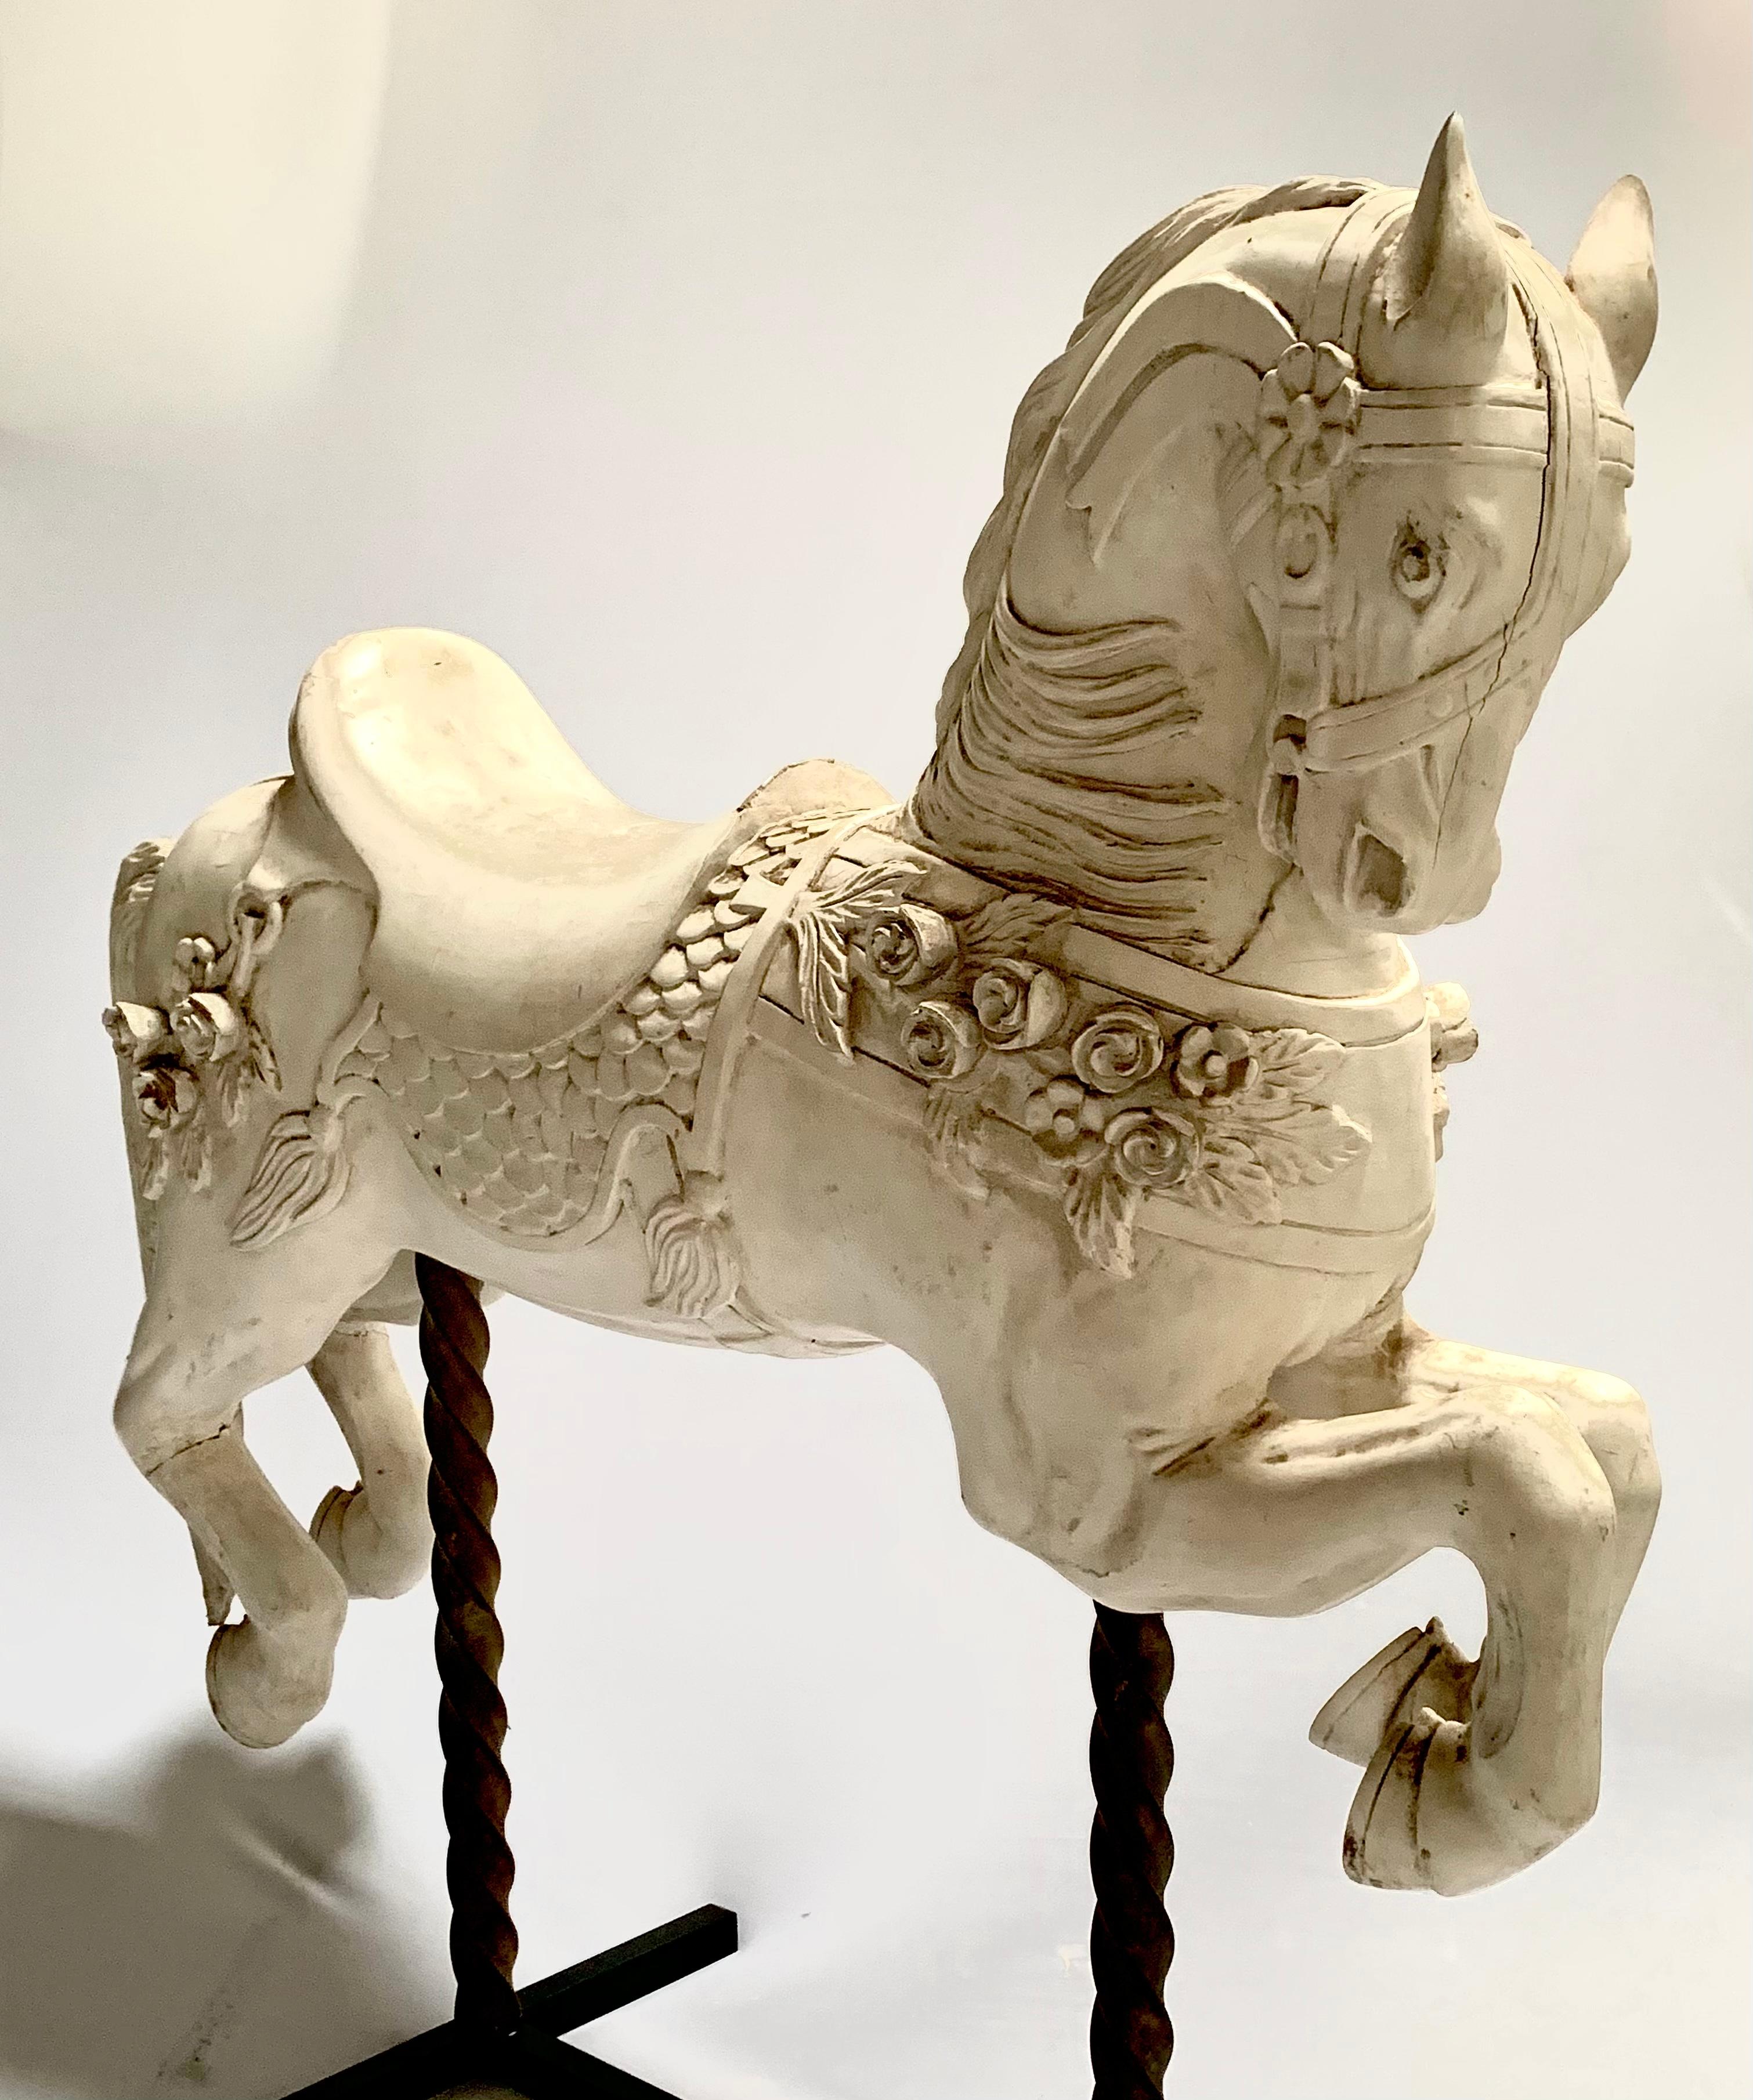 Cheval de carrousel juvénile en bois sculpté, orné de roses. Un cheval similaire est en service sur le carrousel de Bushnell Park.
Sculpté dans le style de Charles Carmel qui a immigré aux États-Unis en 1883 où il s'est installé à Brooklyn, New